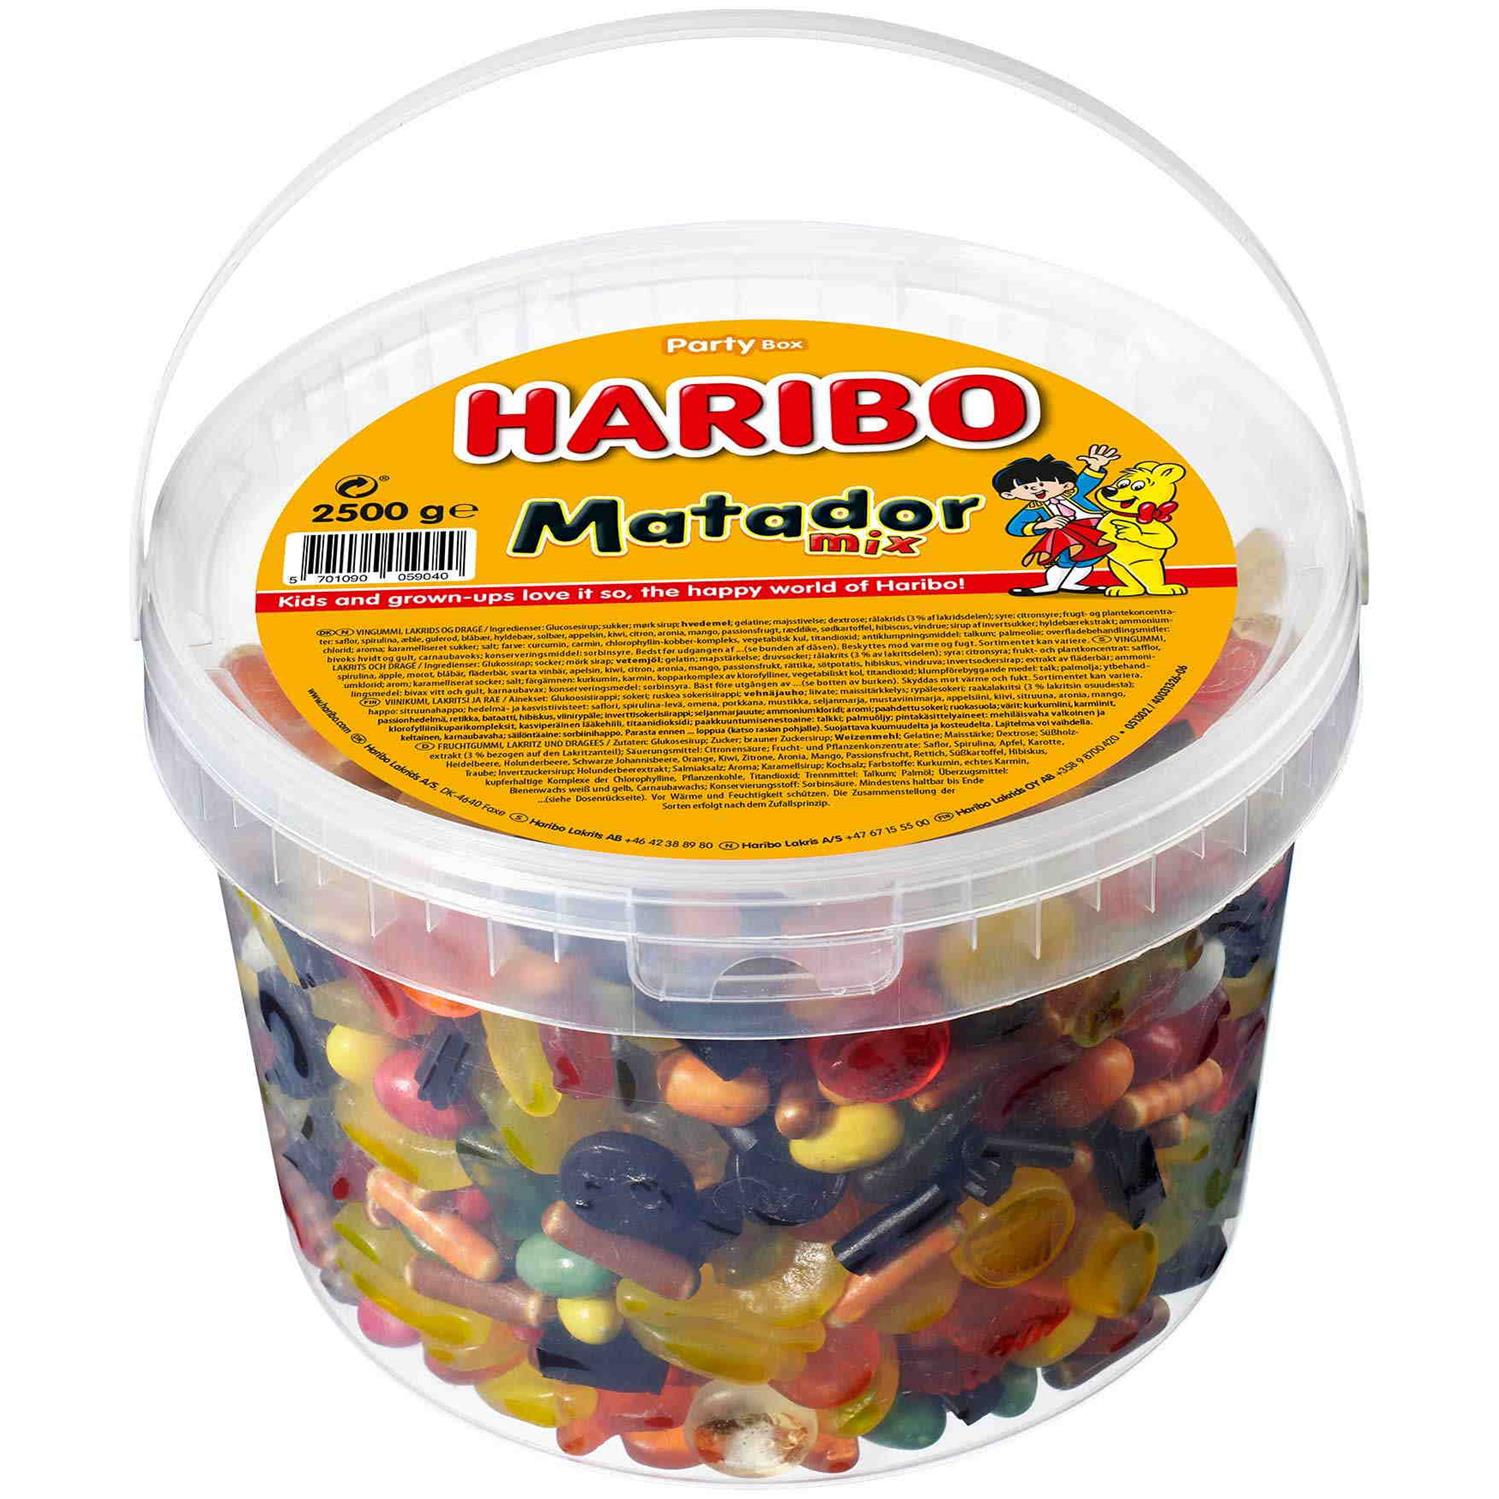 Fradrage Regnskab Opdater Haribo Matador Mix 2,5 kg - Grænsehandel til billige priser